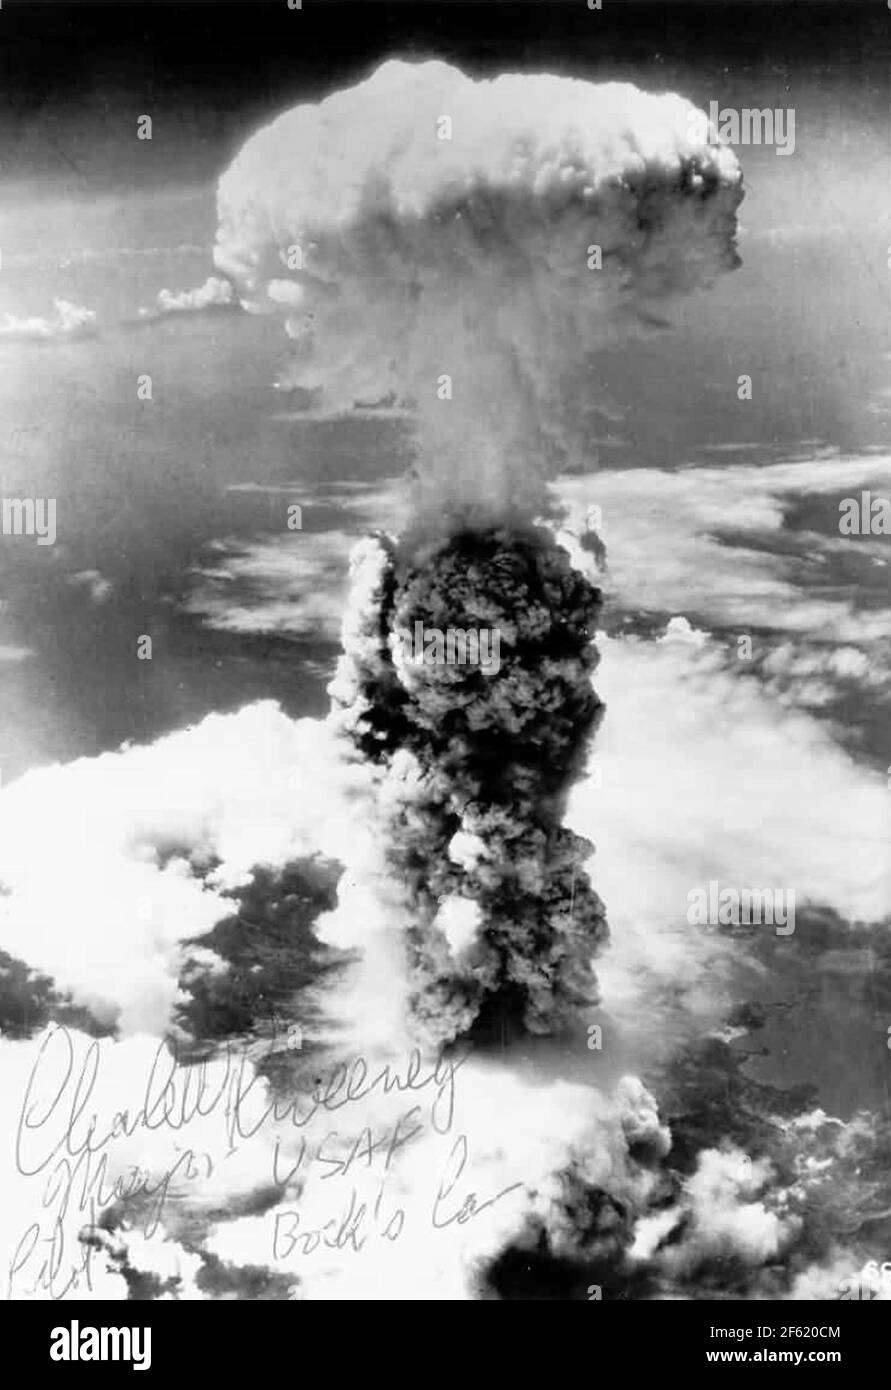 Bombe atomique, Nagasaki, 9 août 1945 Banque D'Images